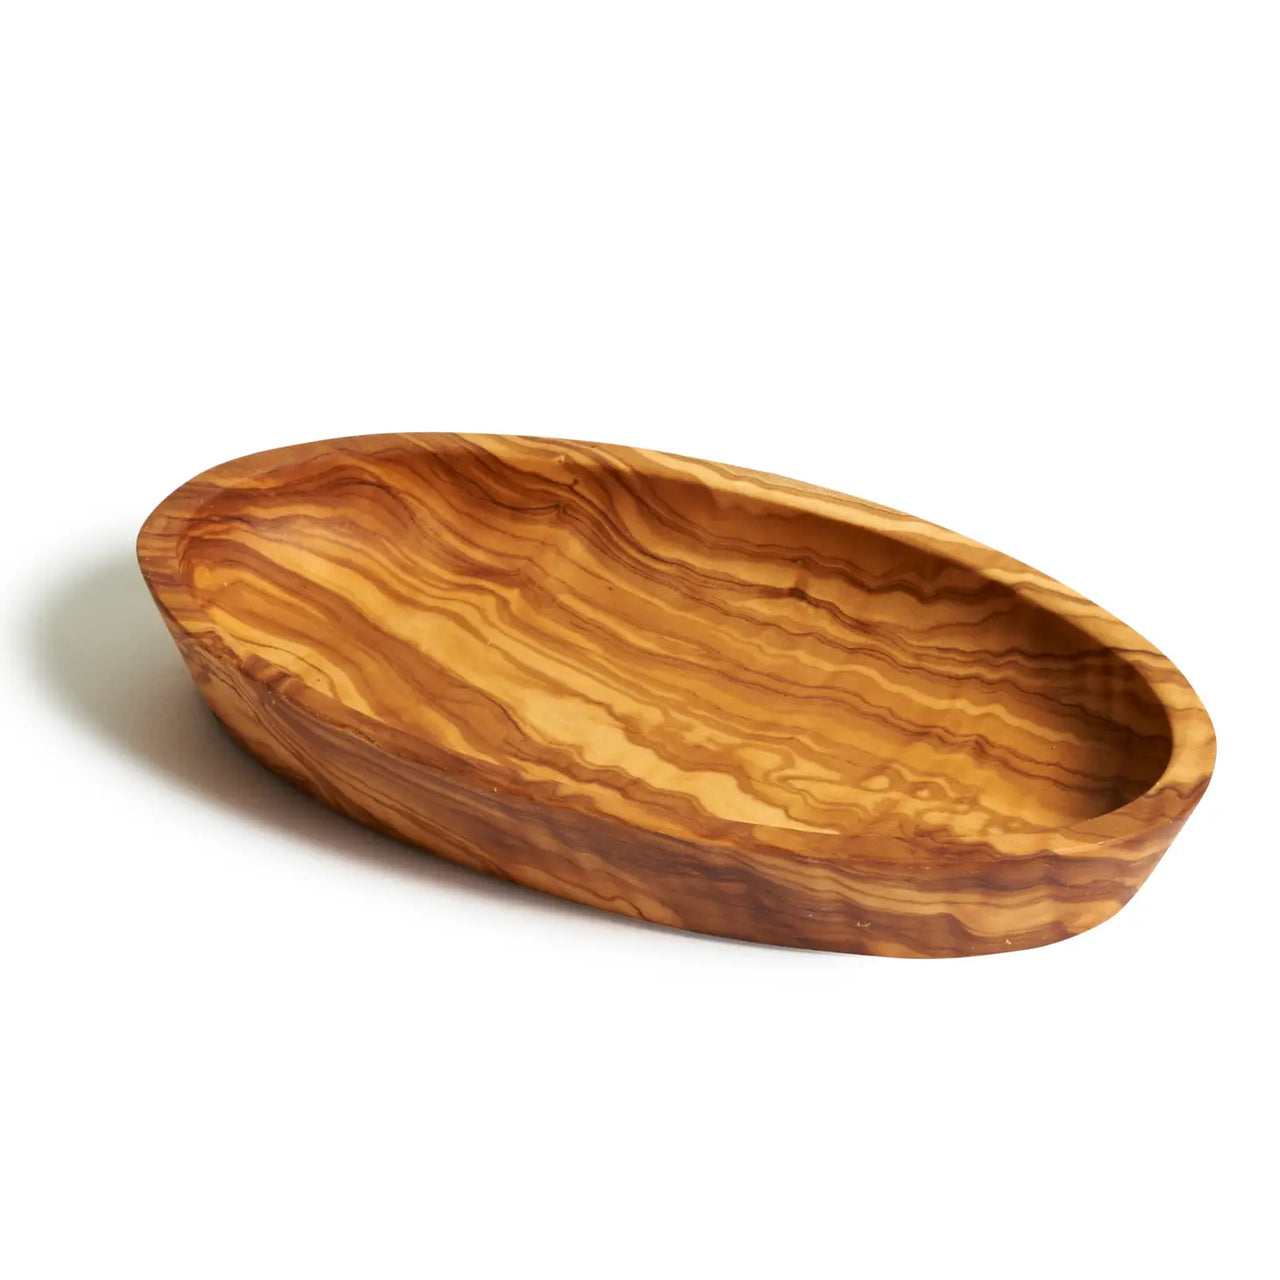 Plato para mojar de madera de olivo - Mediano